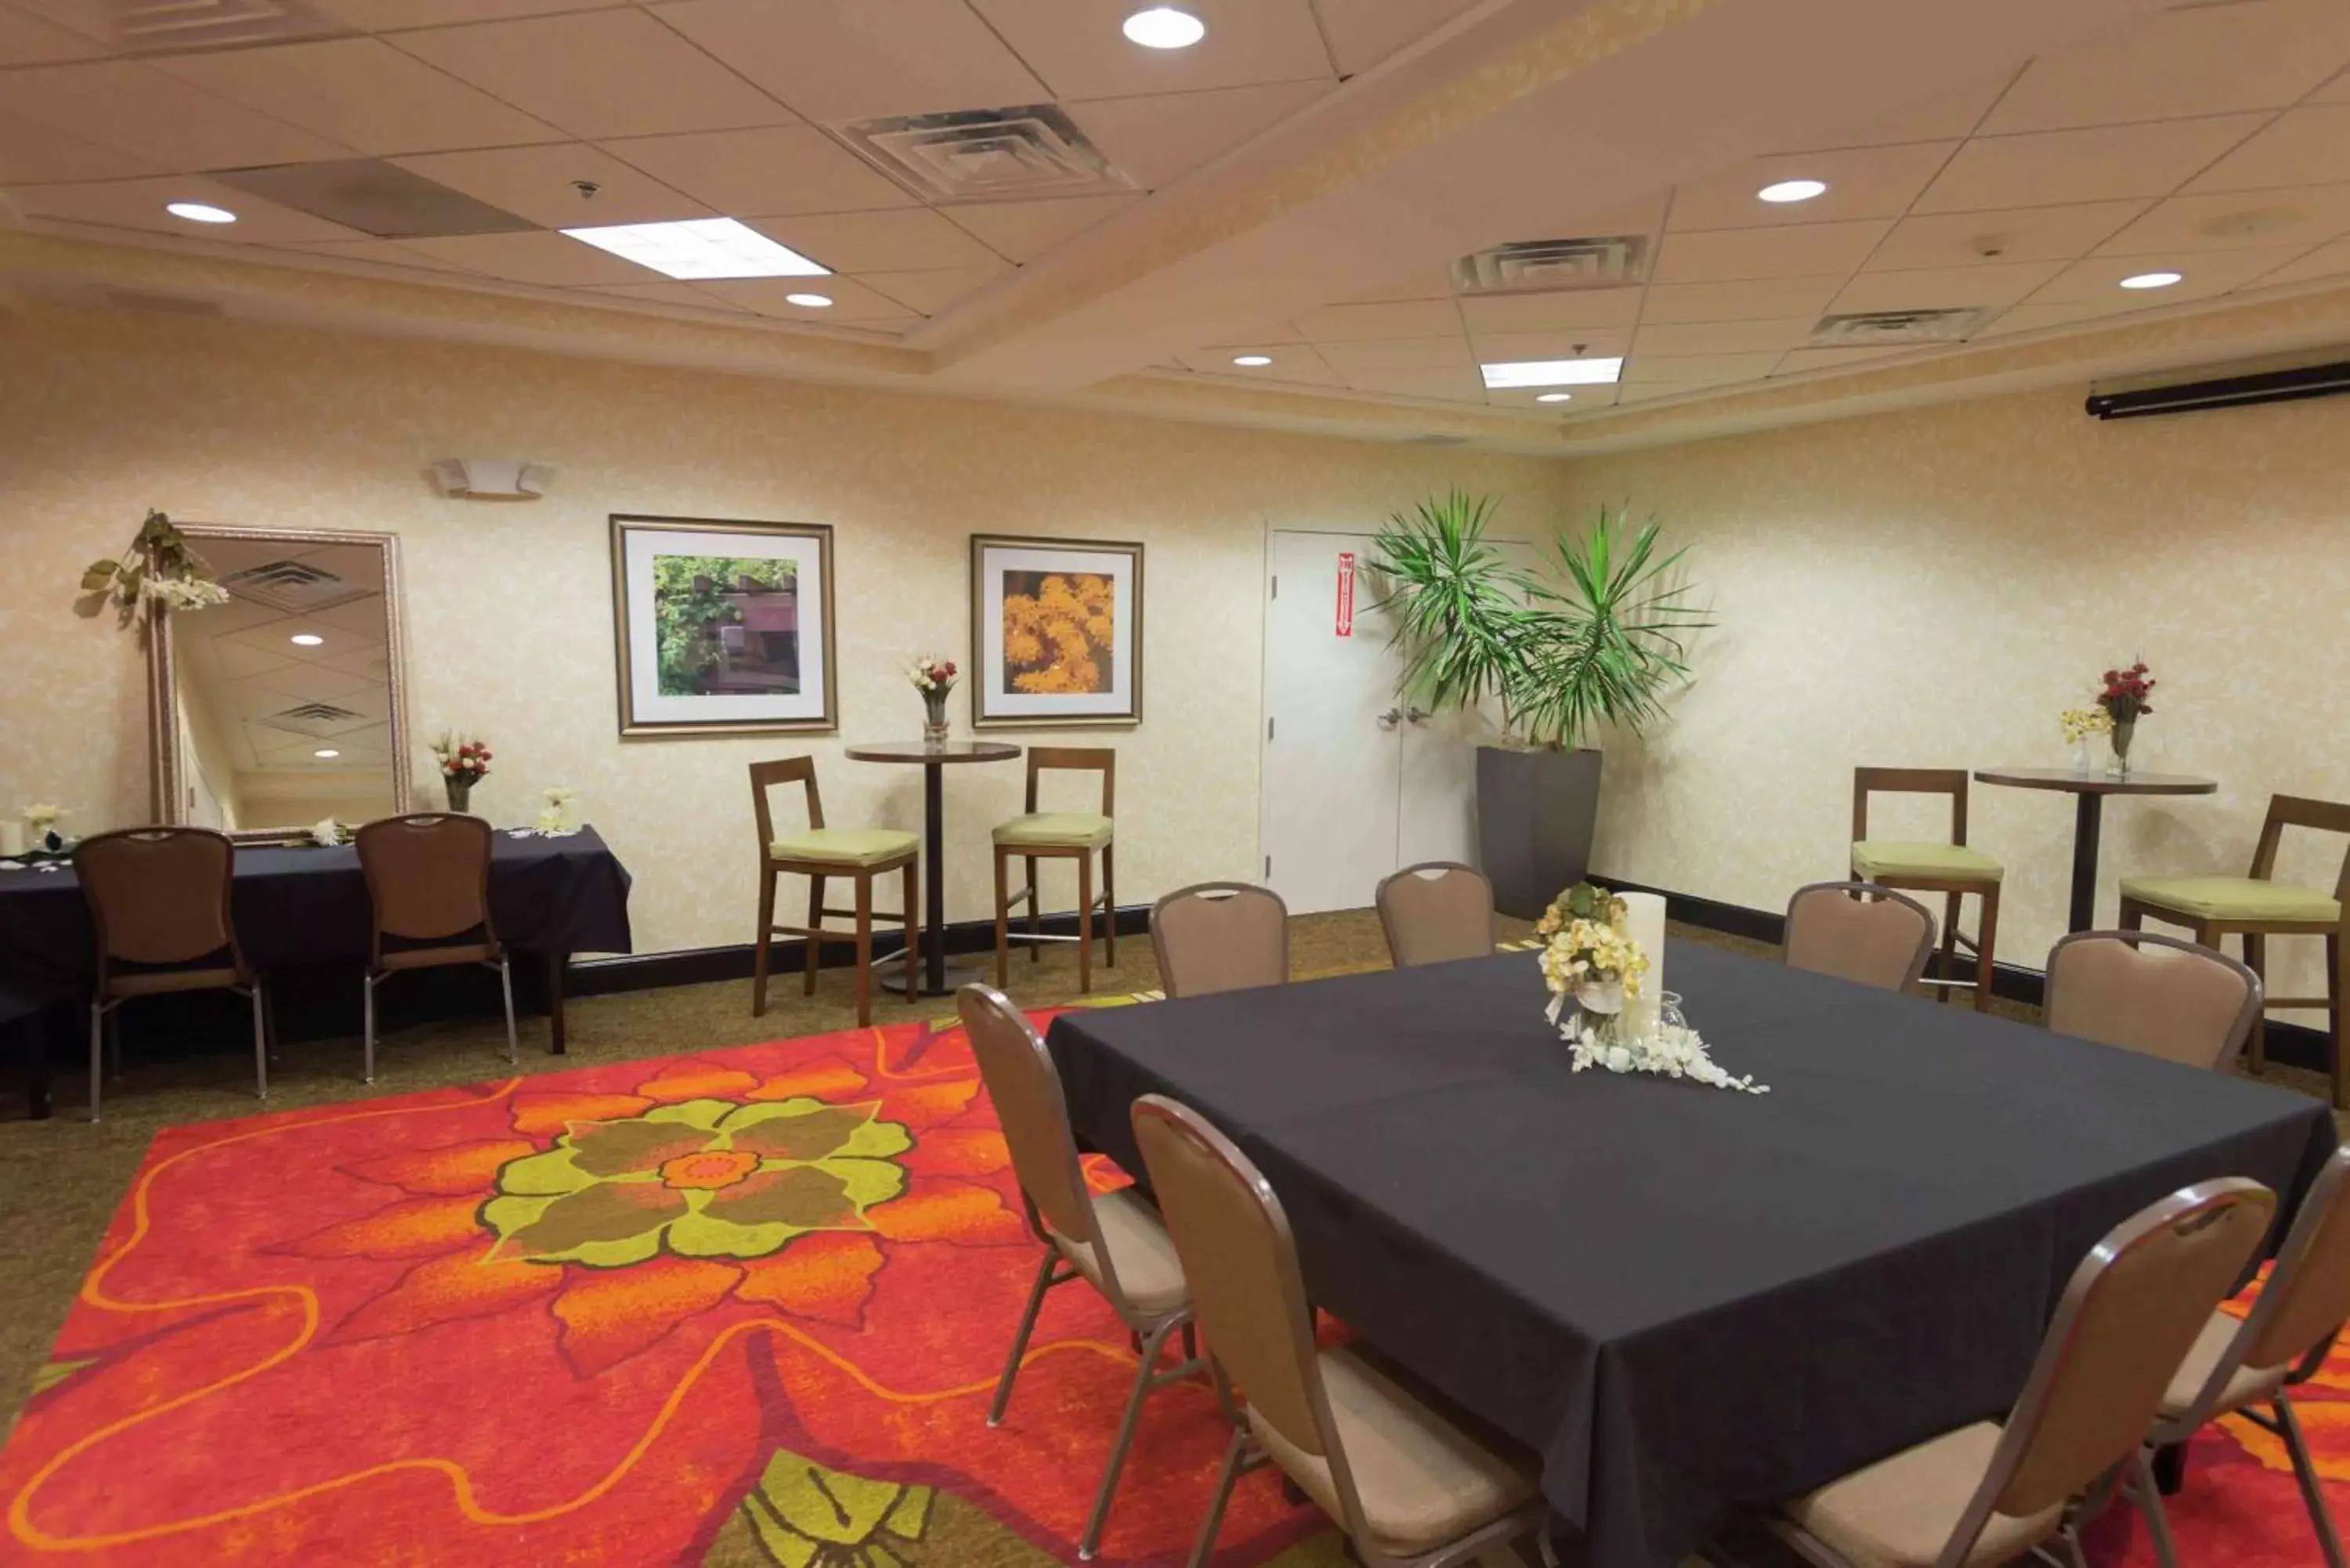 Meeting/conference room in Hilton Garden Inn Merrillville